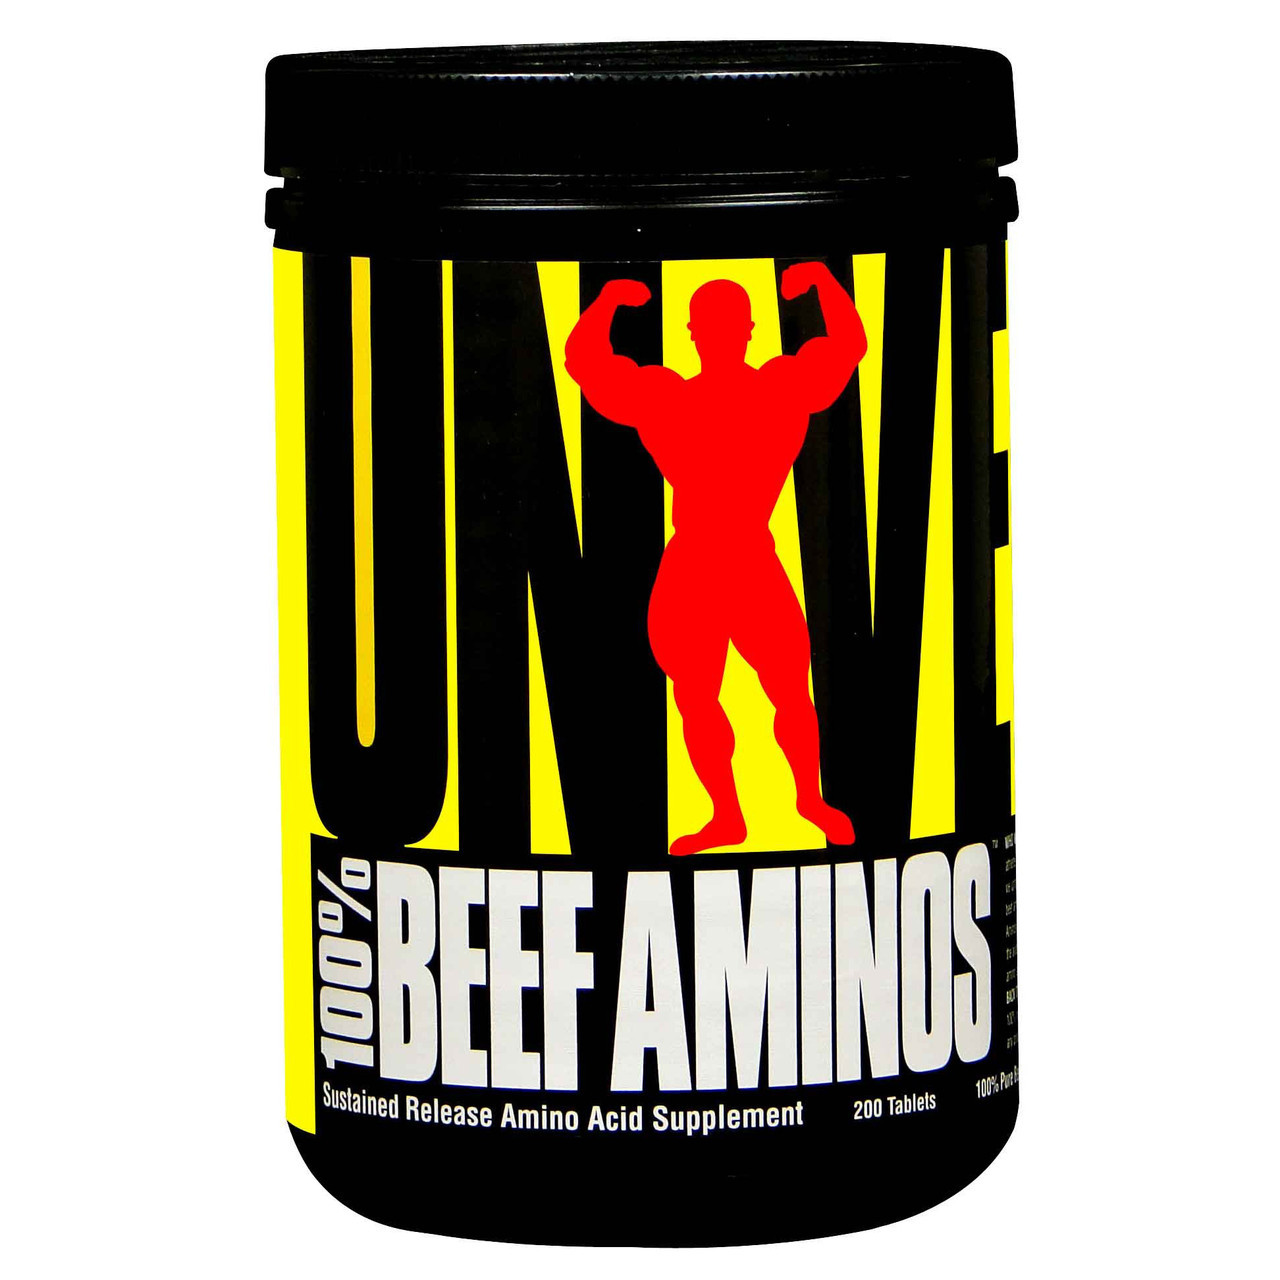 

Universal Nutrition 100% Beef Aminos 400 табл., аминокислотный комплекс